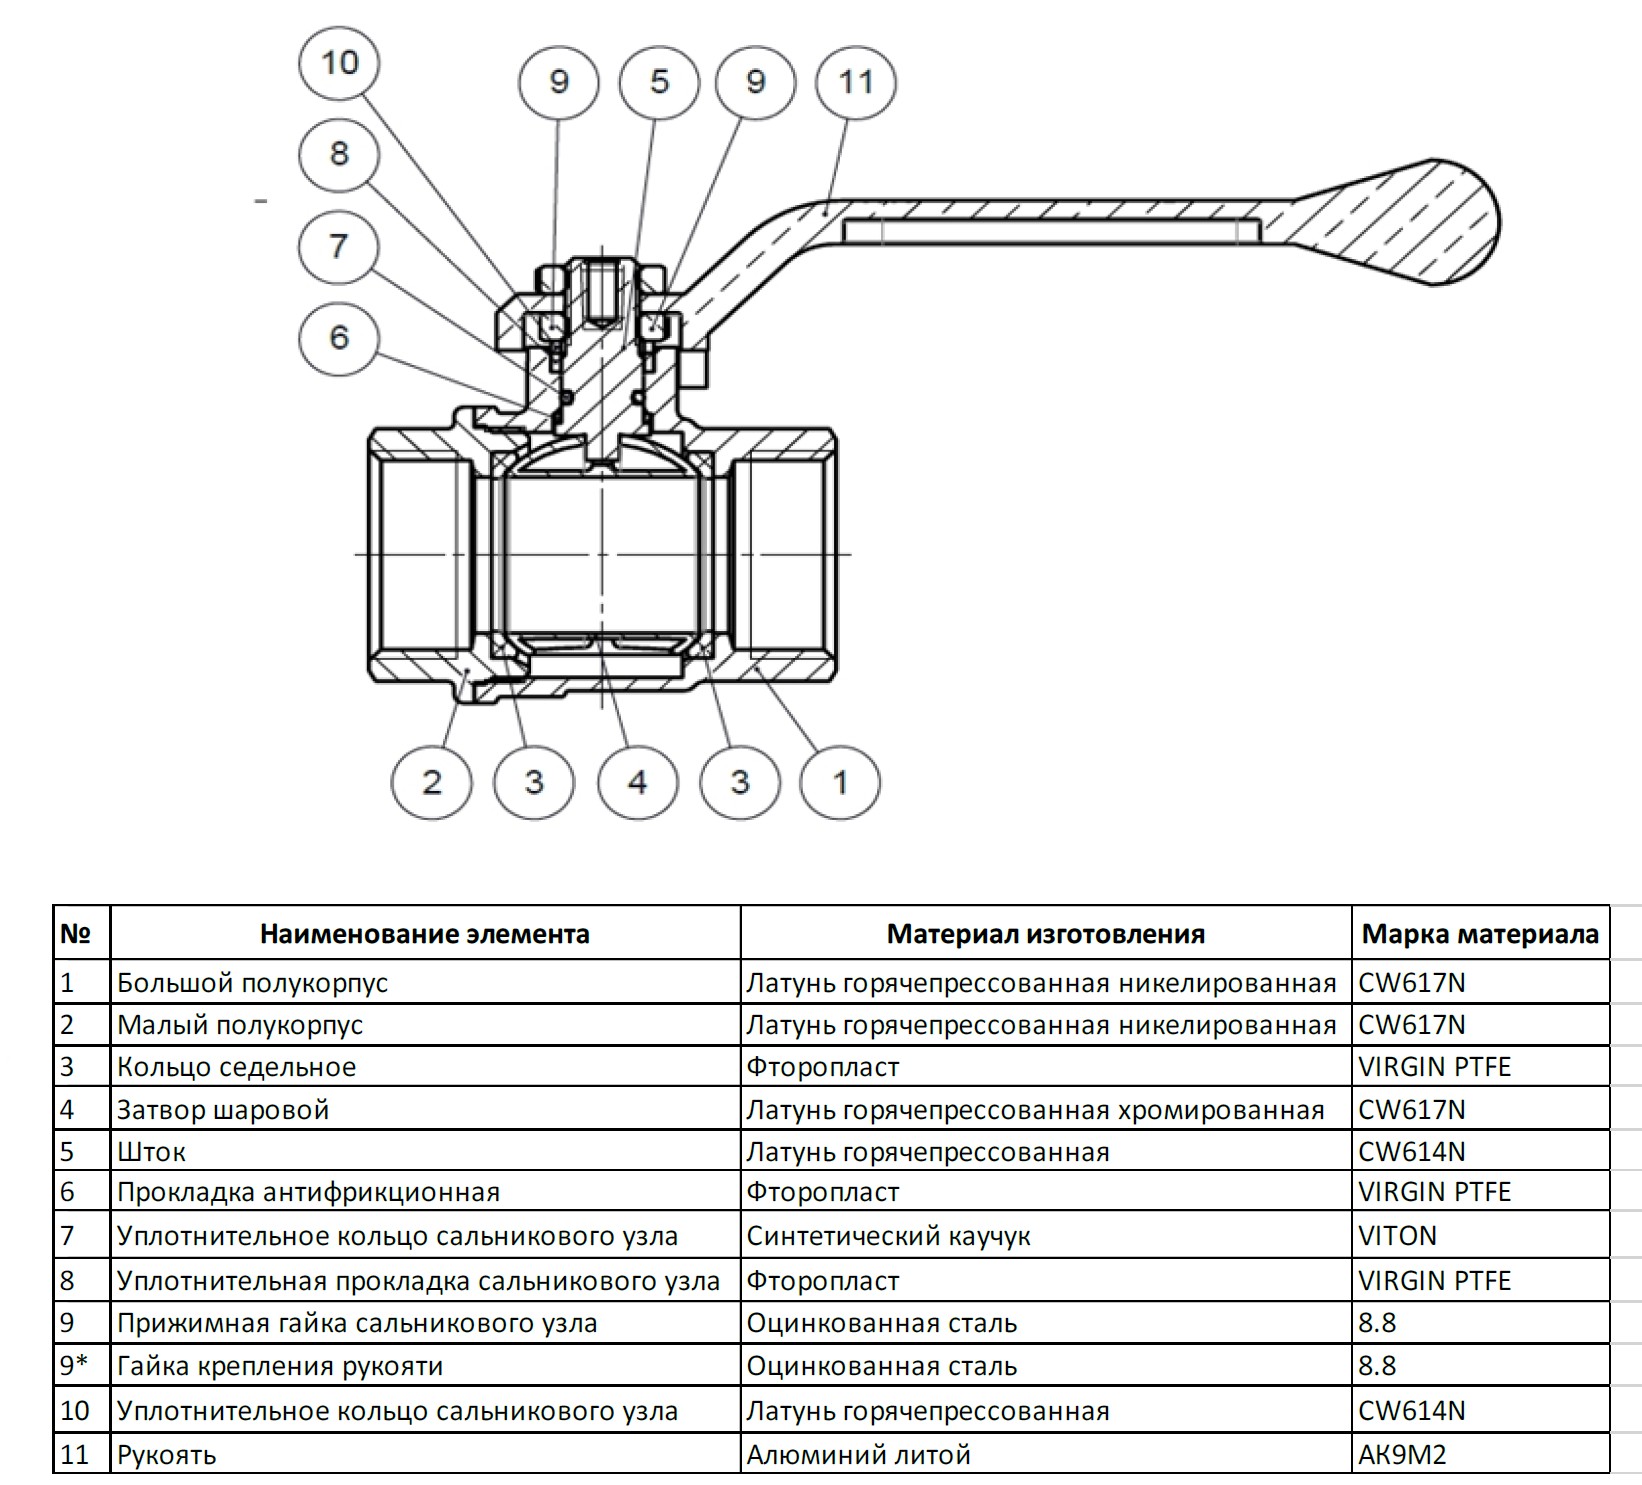 Шаровые краны - технические характеристики, обозначения, размеры, производители